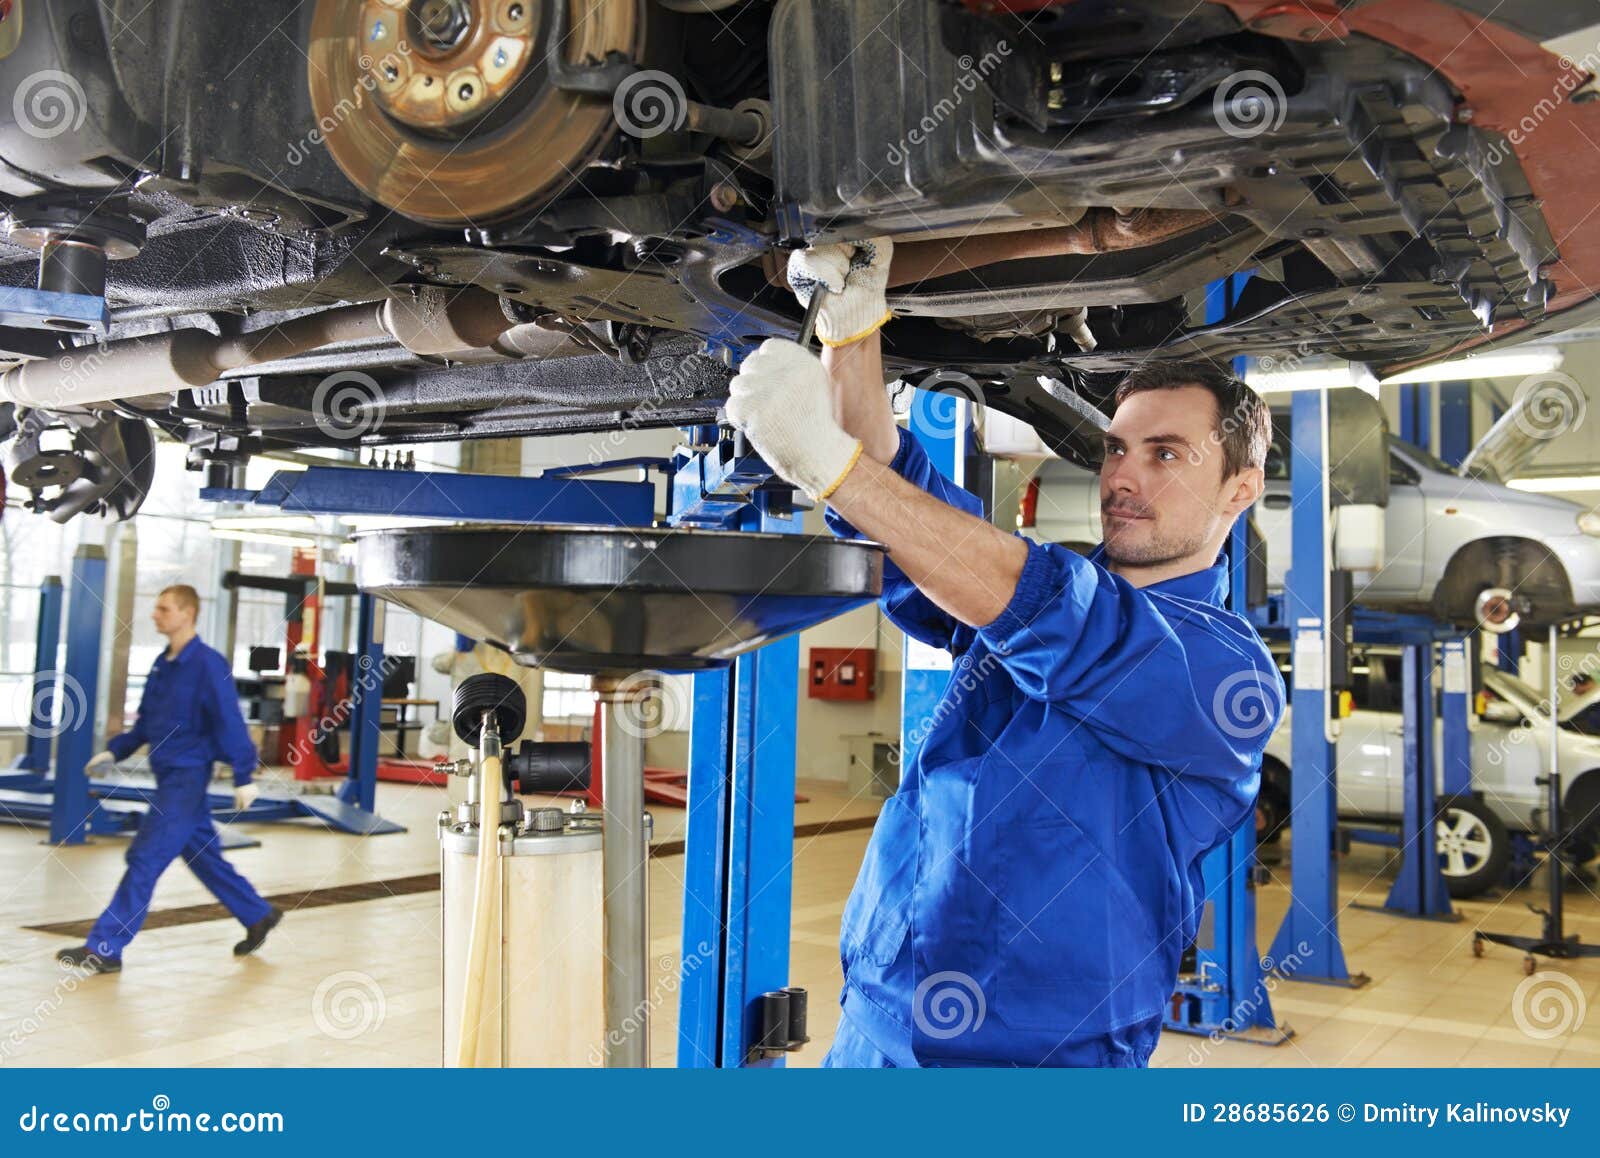 auto mechanic at car suspension repair work